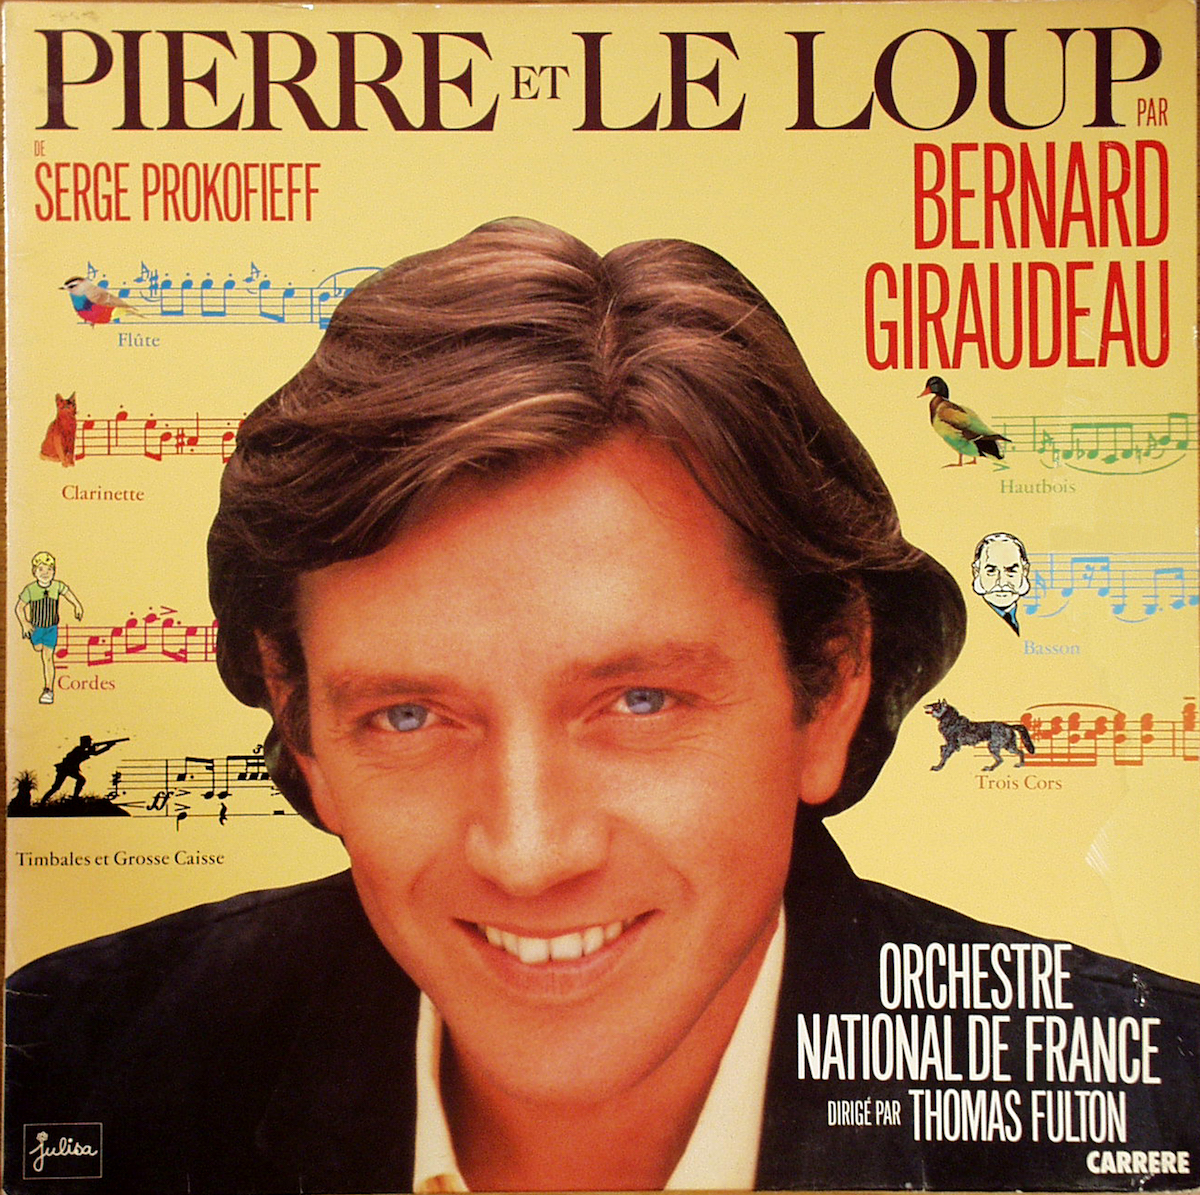 Version Bernard Giraudeau 33 Tours simple 1985, Produit par Yves Razé, alias J-François Michael